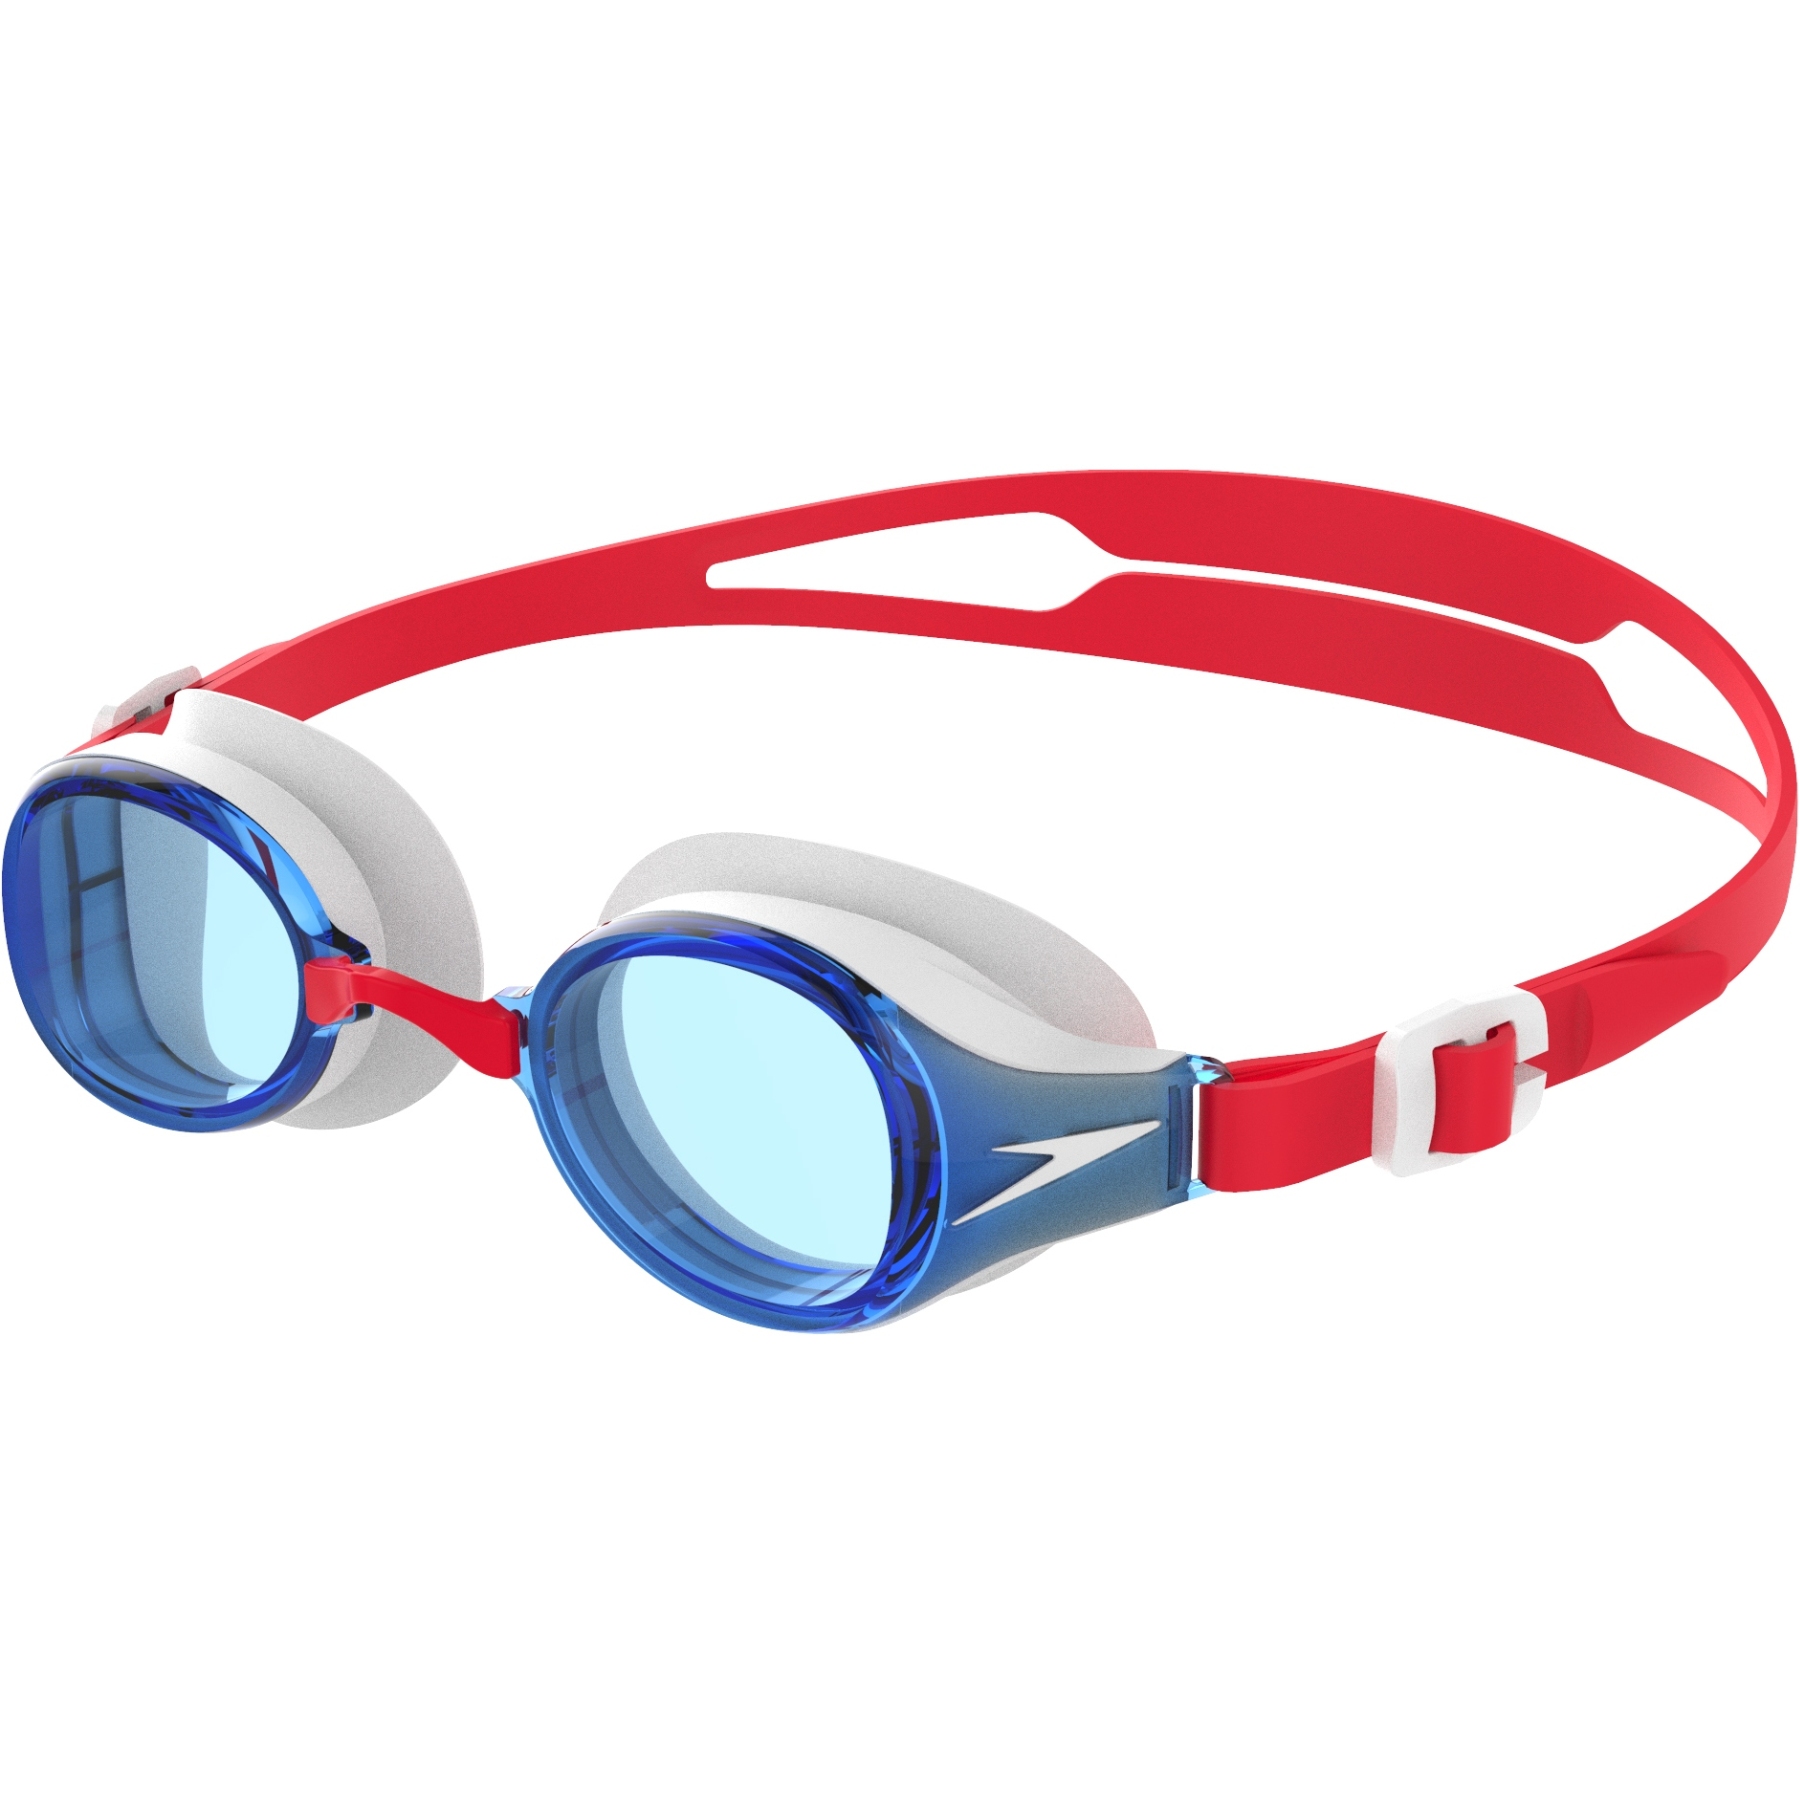 Produktbild von Speedo Hydropure Junior Schwimmbrille - rot/blau